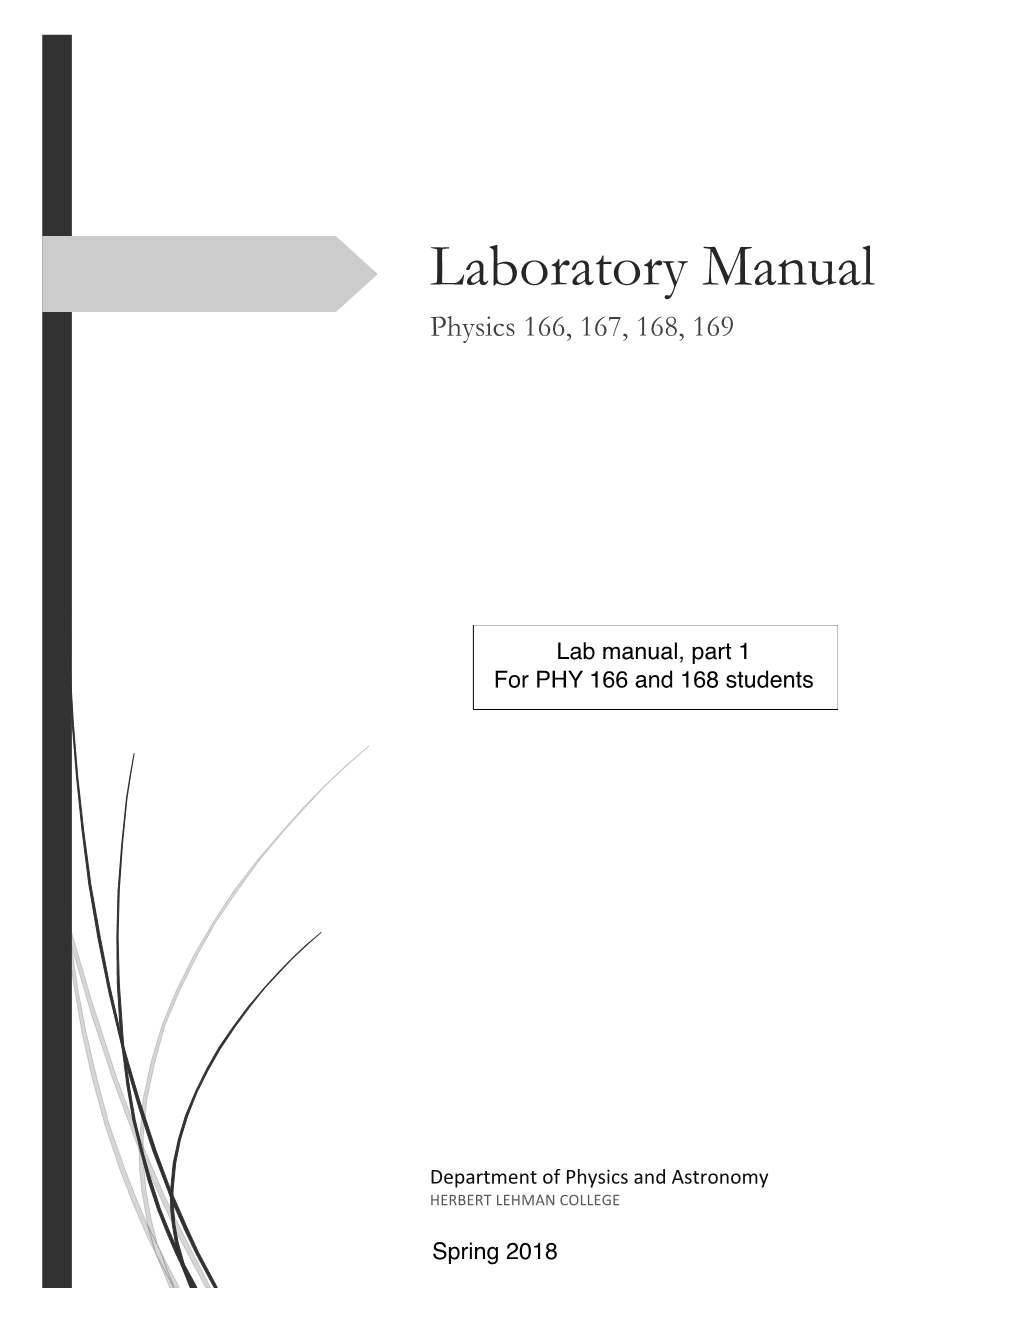 Laboratory Manual Physics 166, 167, 168, 169